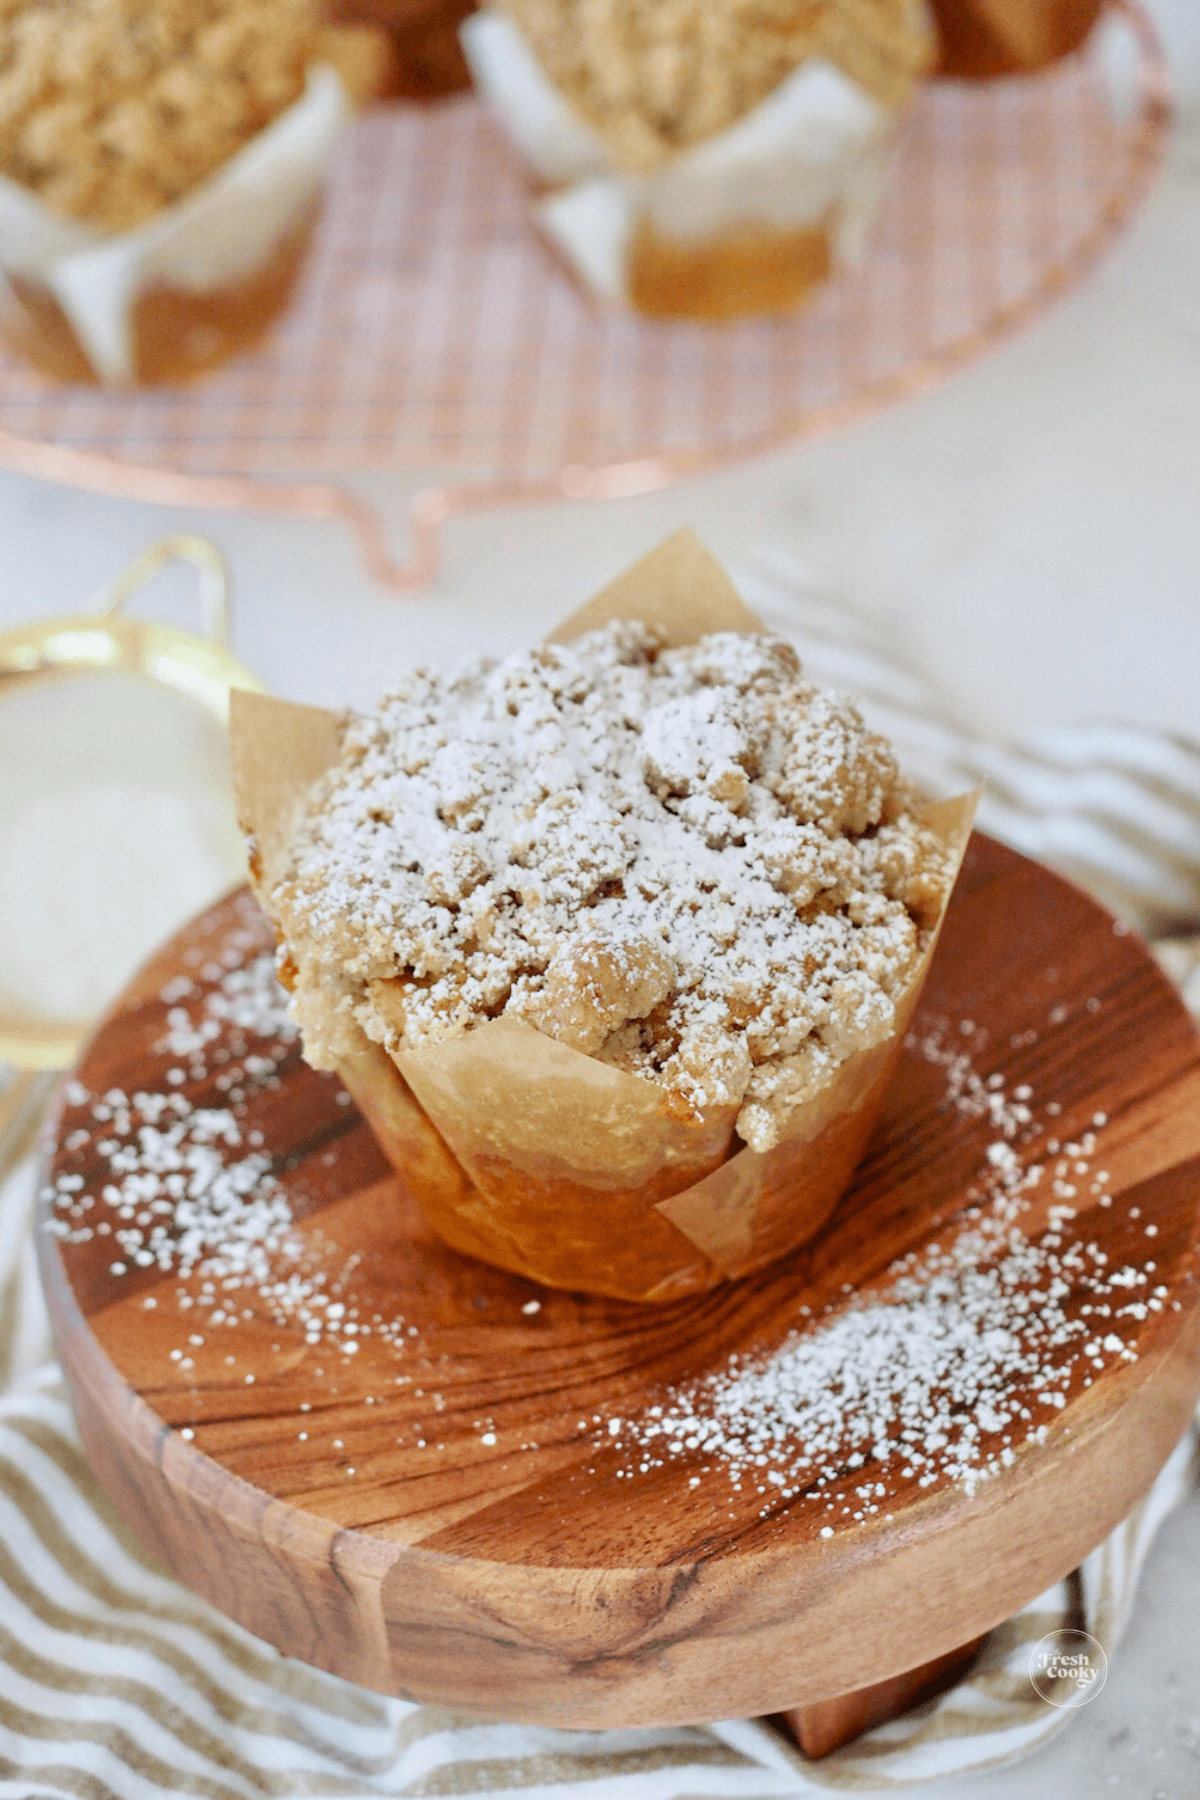 Panera pumpkin muffin on wooden pedestal, sprinkled with powdered sugar.